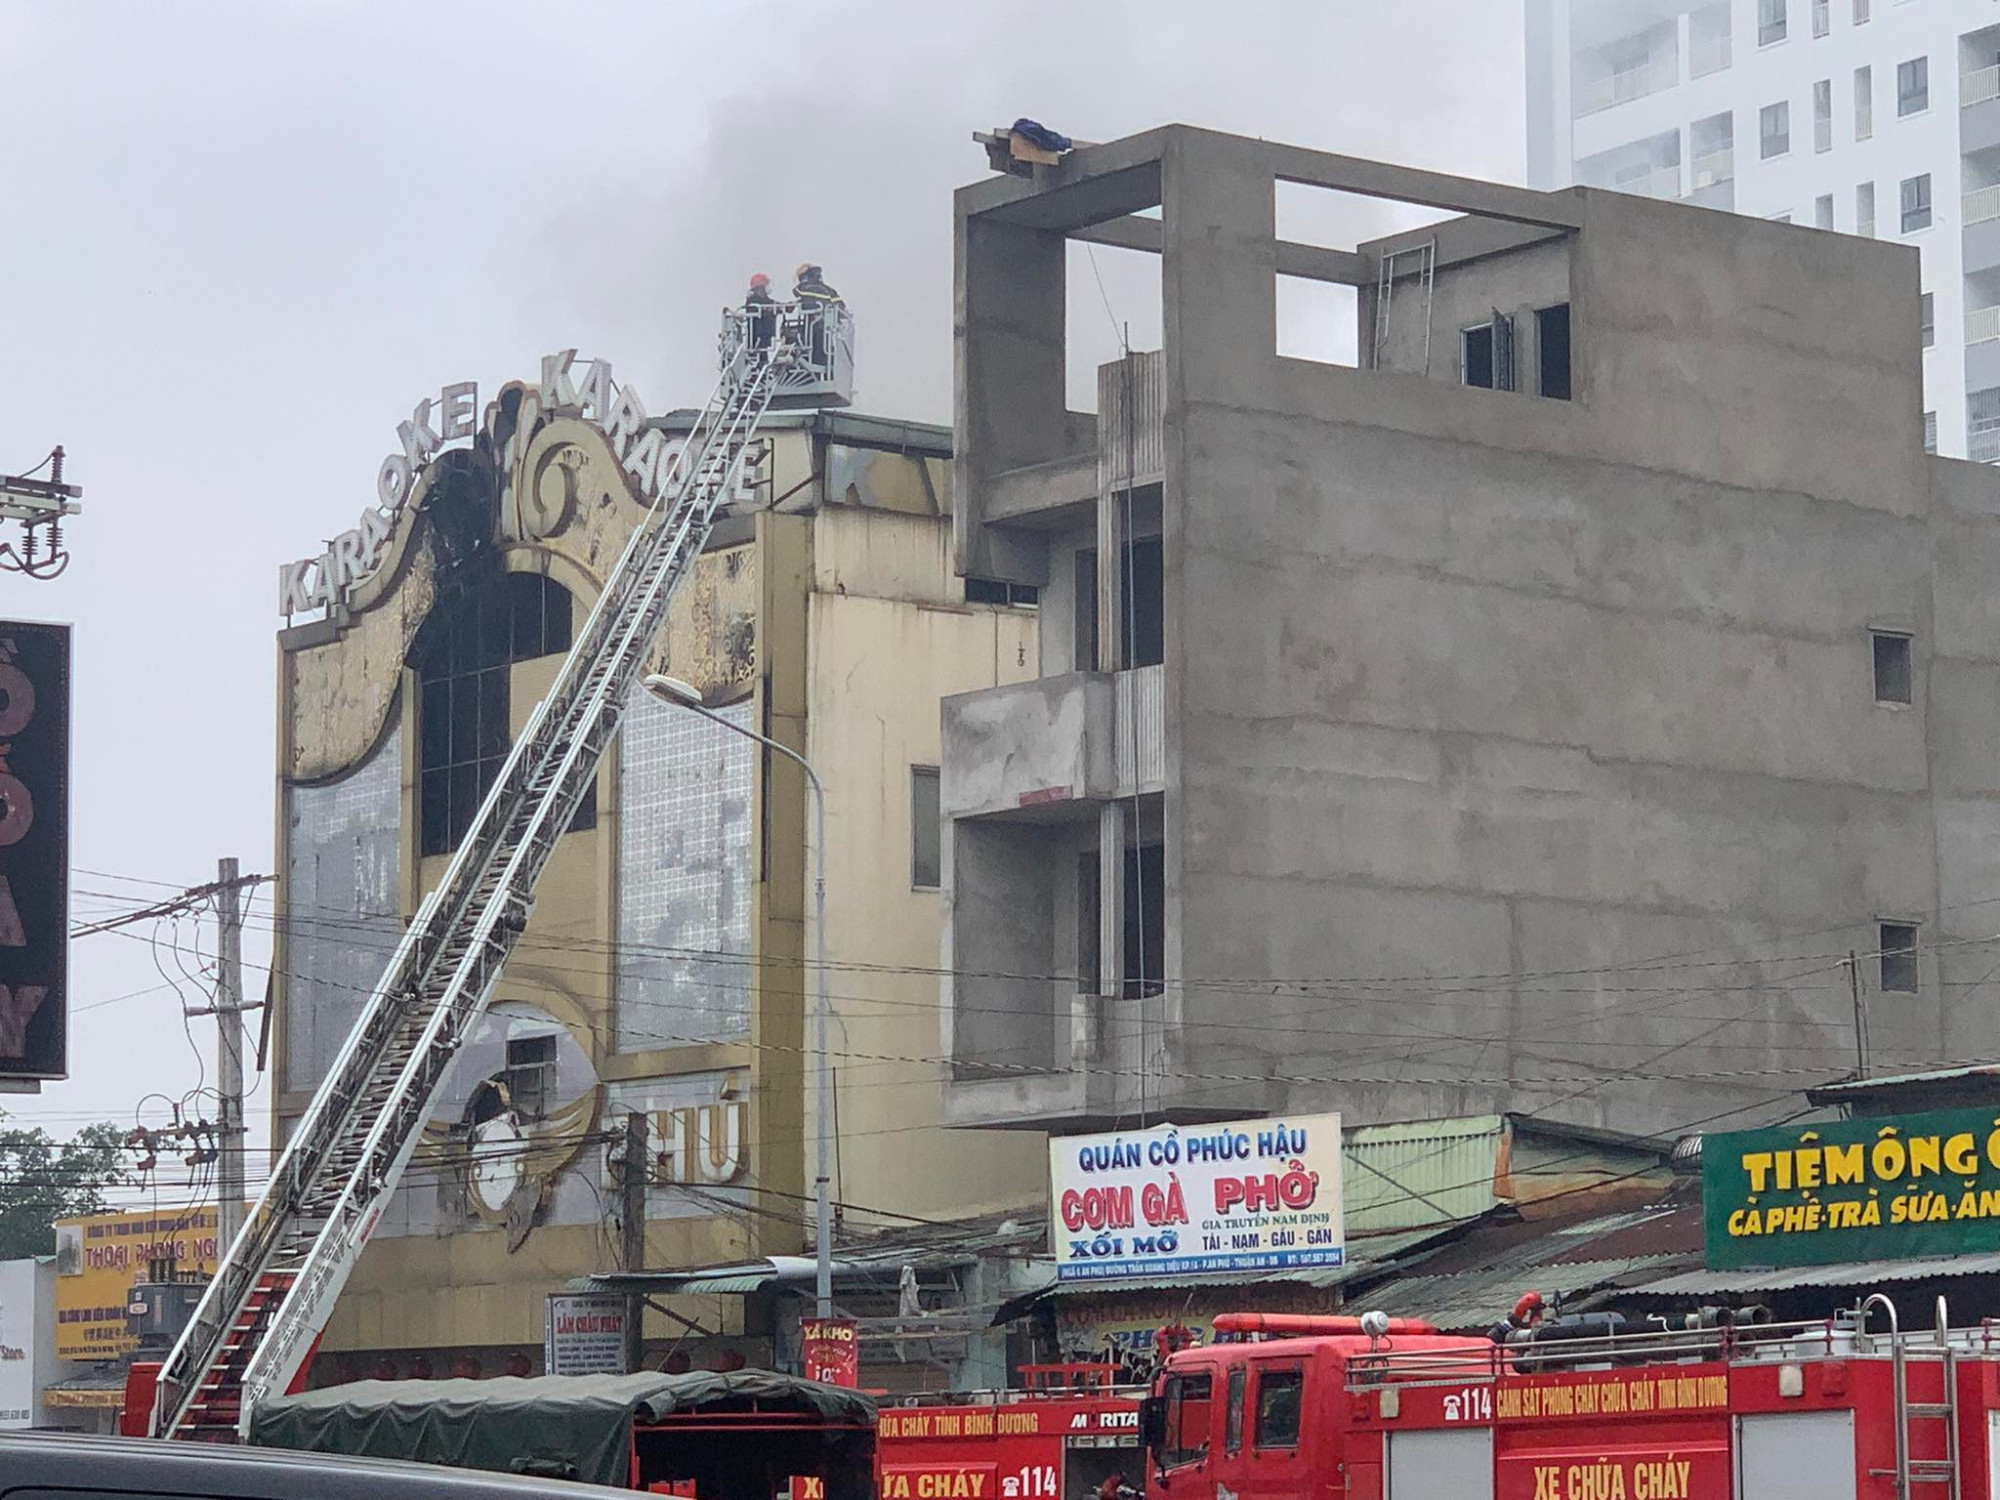 Quán karaoke An Phú nơi xảy ra vụ cháy khiến 32 người chết 